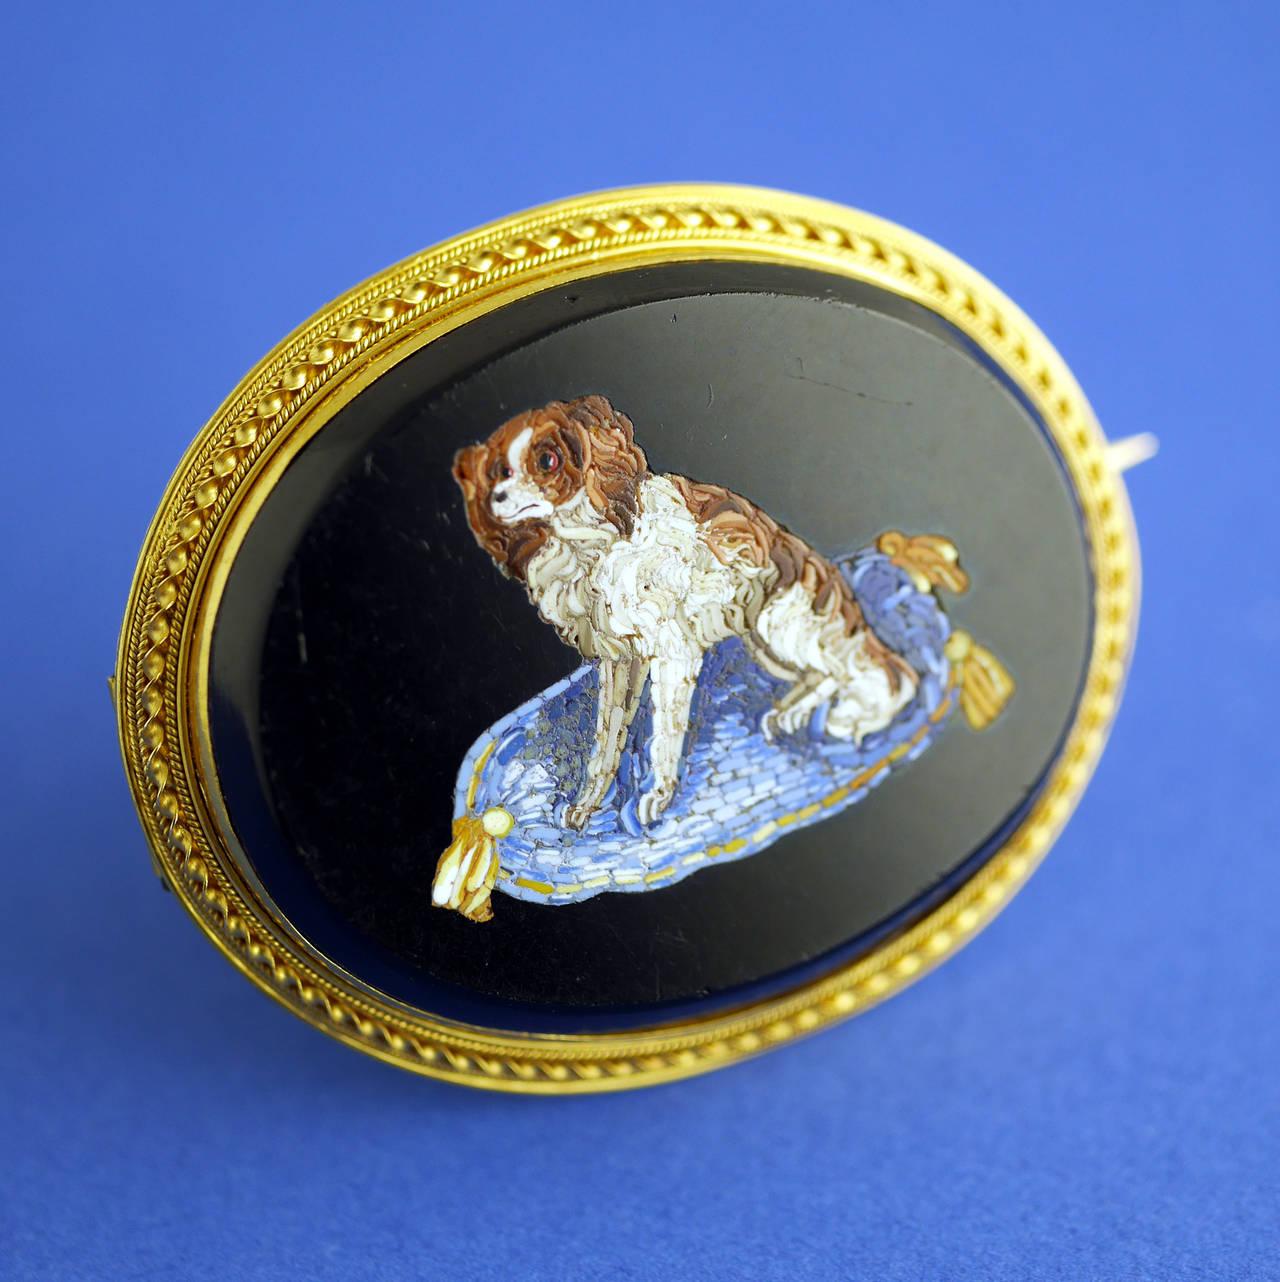 Feines Mikromosaik, das einen King-Charles-Spaniel-Hund auf seinem Kissen darstellt, gefasst als Brosche in 18 Karat Gold. 

Hunde waren ein Symbol für treue Liebe. Die King-Charles-Spaniel-Rasse war bei der englischen Aristokratie äußerst beliebt,